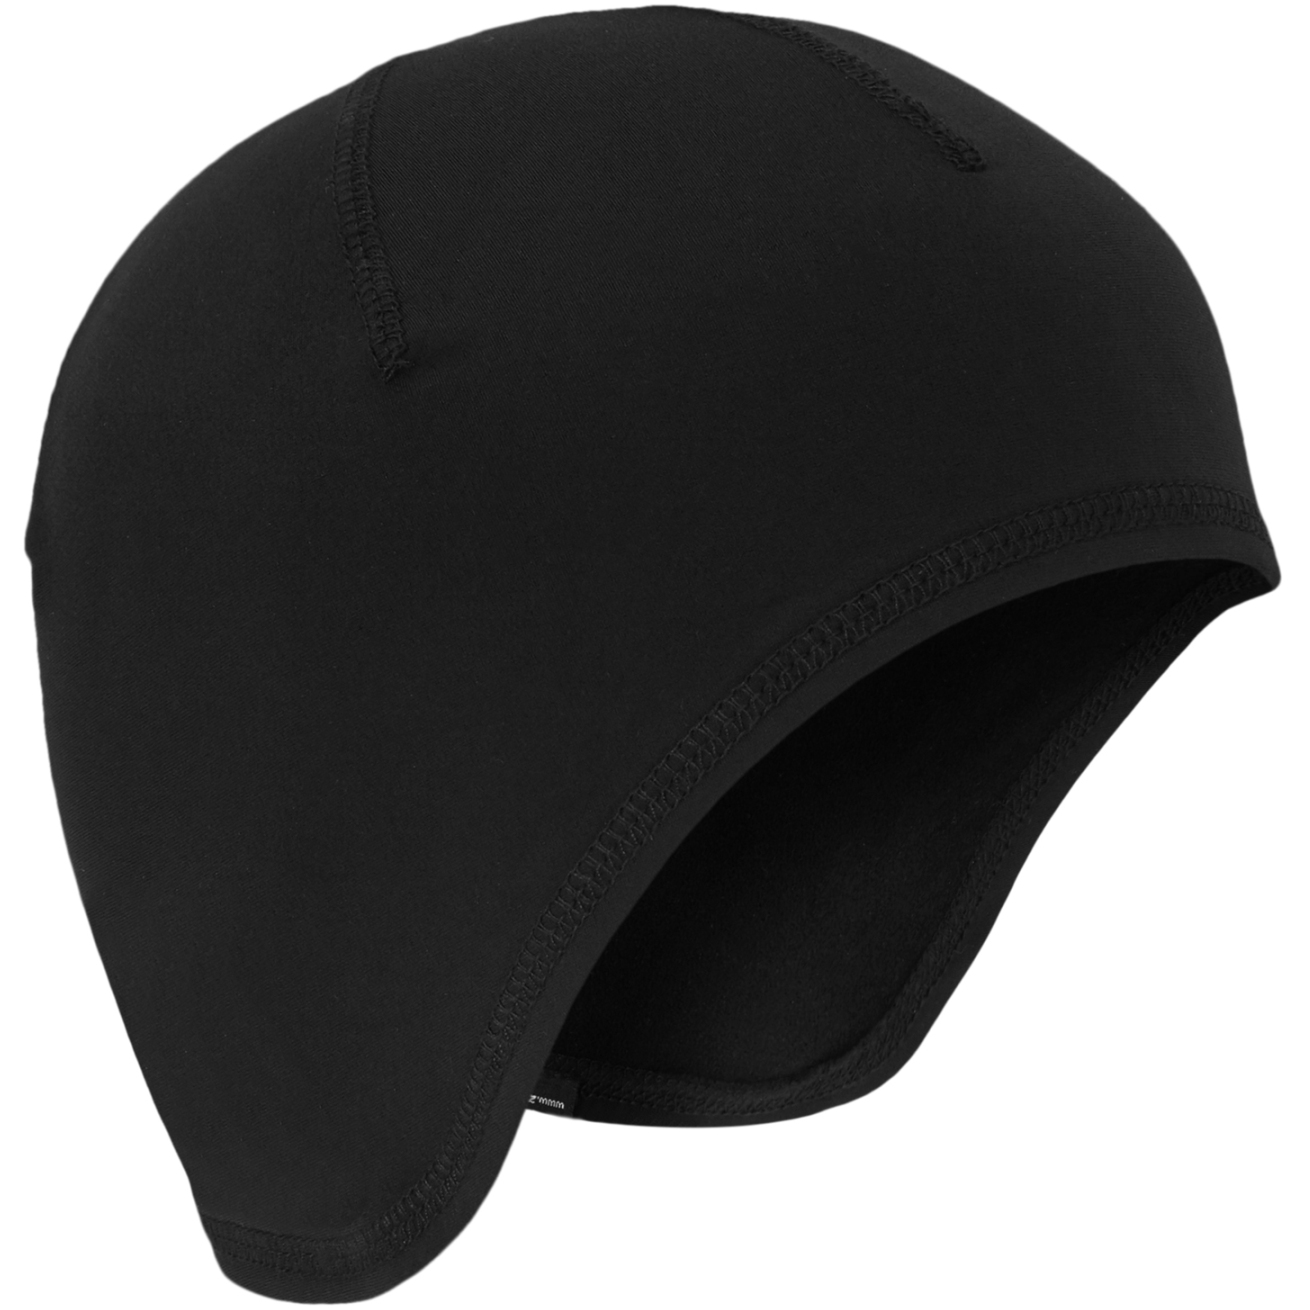 Productfoto van Ziener Ianthe Box Under Helmet Hat - black